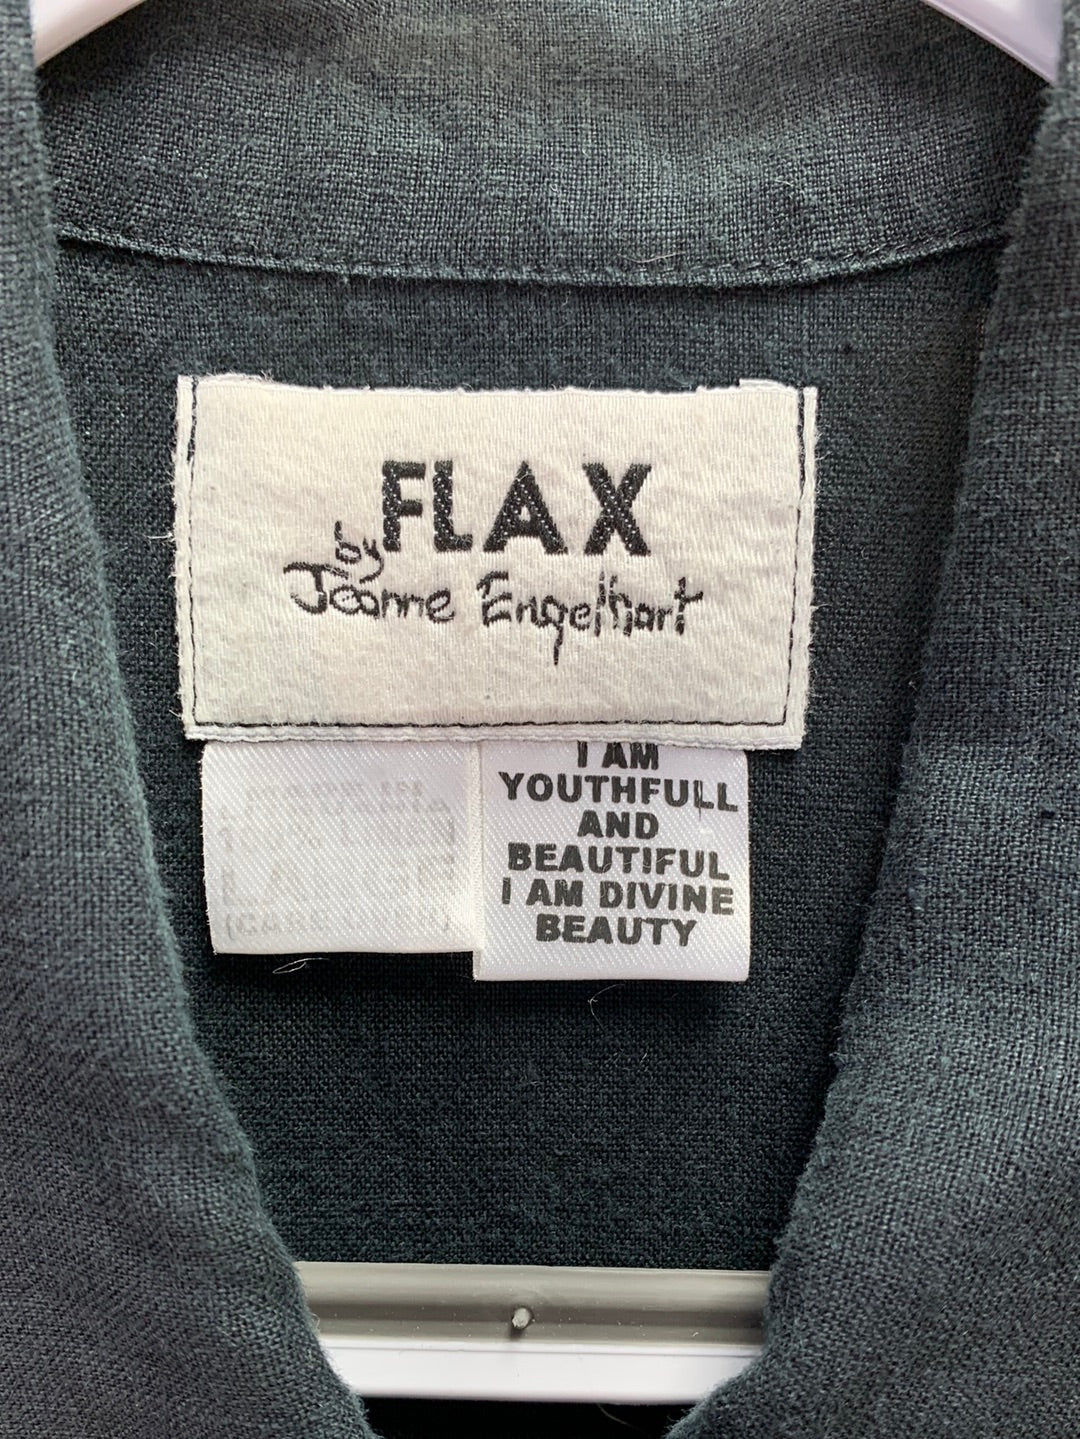 FLAX JEANNE ENGELHART faded black Linen Button Up Short Sleeve Top - L